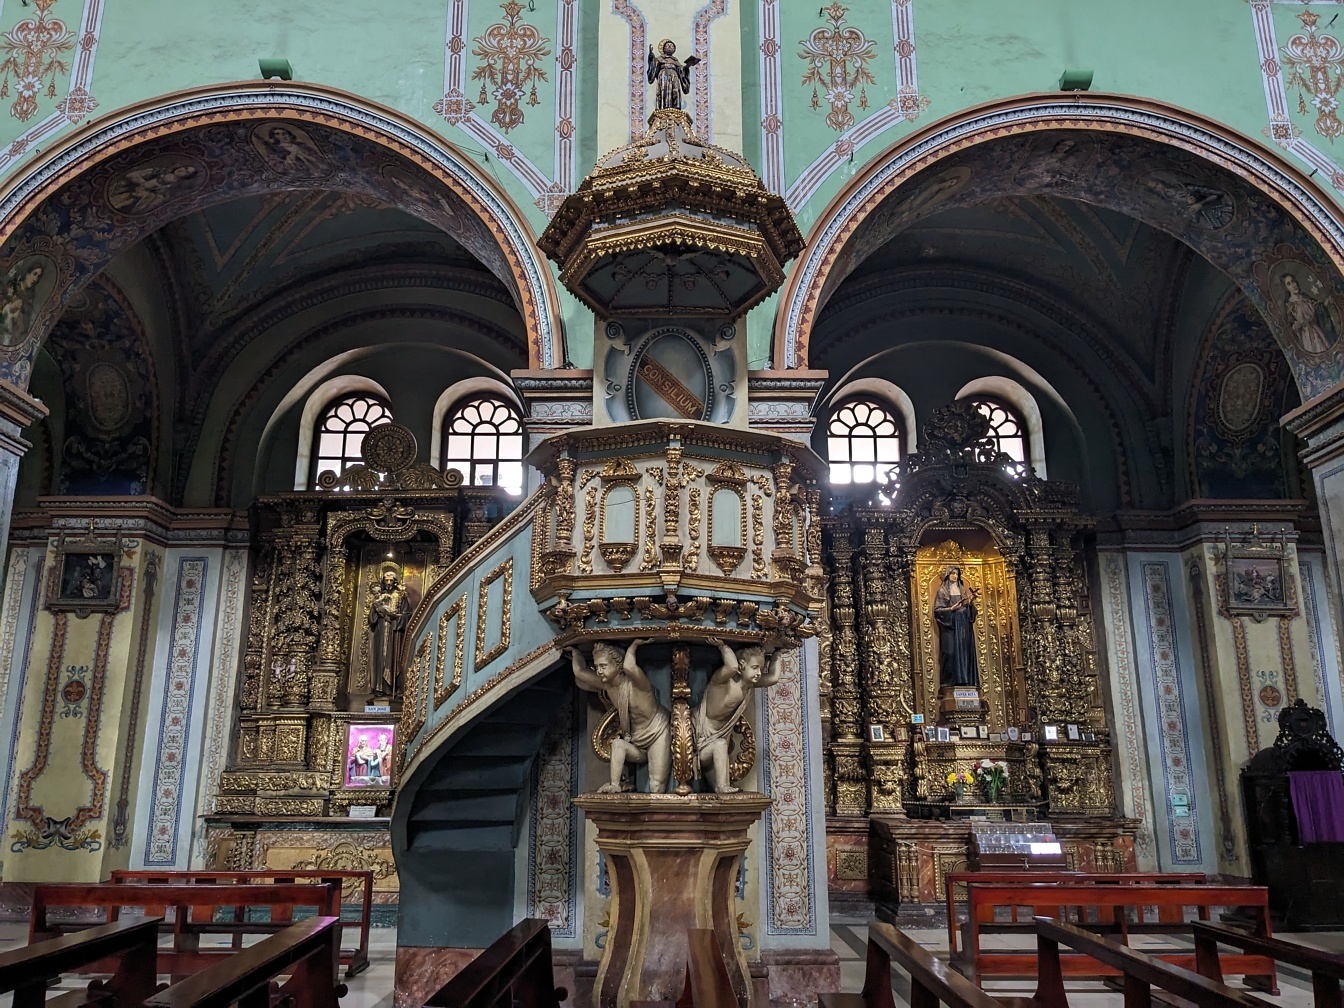 Wnętrze kościoła rzymskokatolickiego z ozdobnymi spiralnymi schodami w stylu barokowym